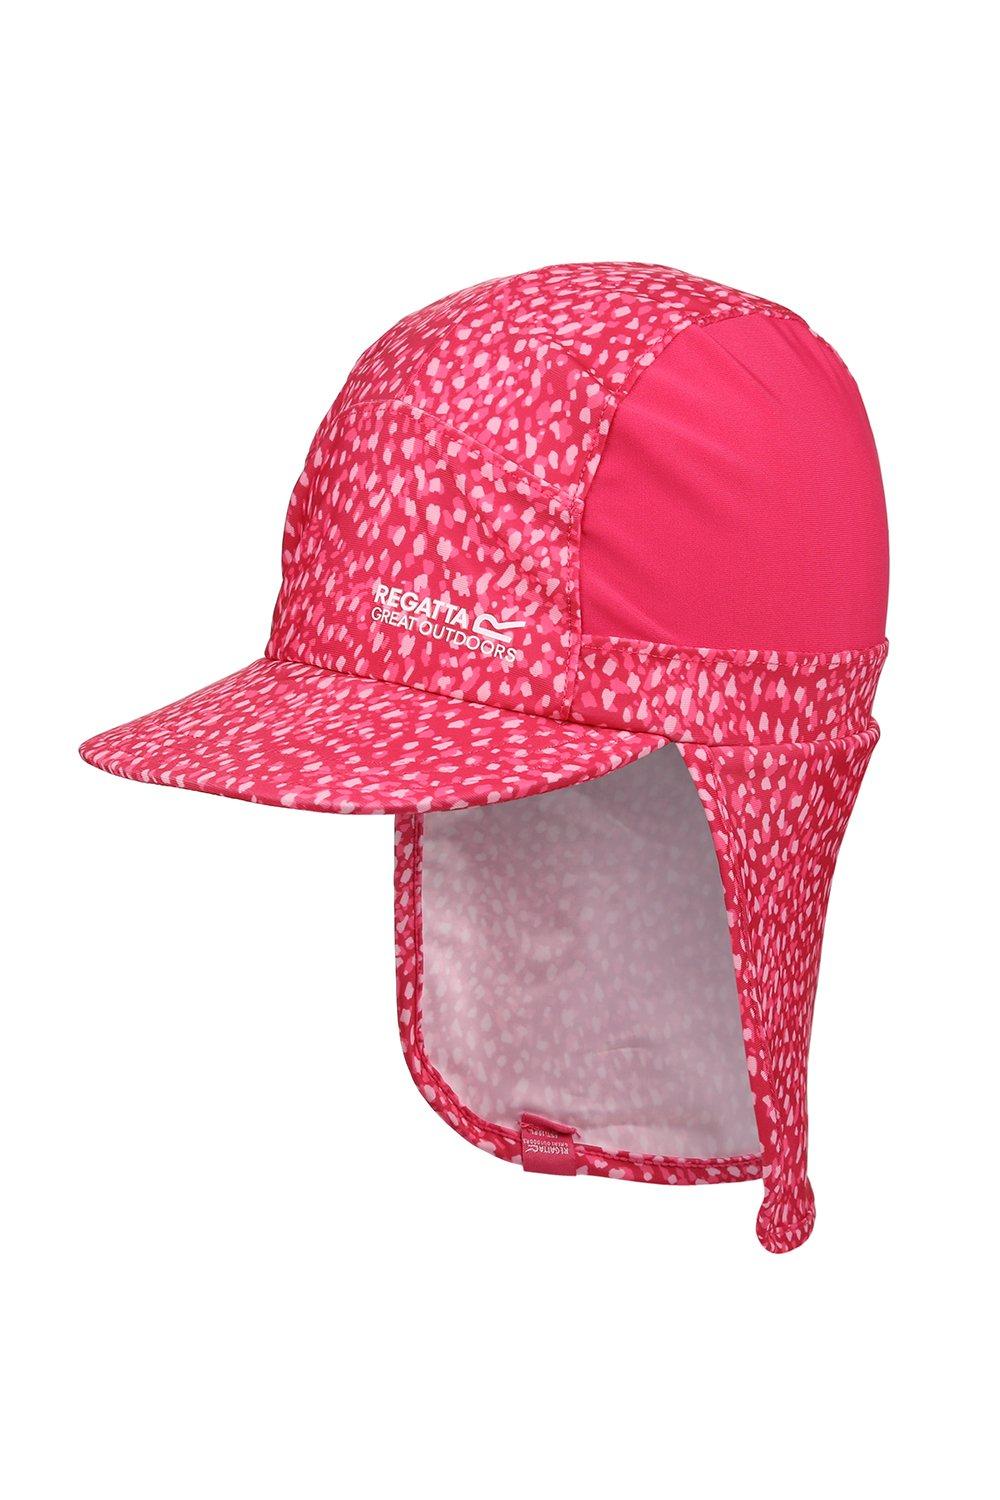 Защитная шапочка для шеи с солнцезащитным козырьком «Protect» Regatta, розовый